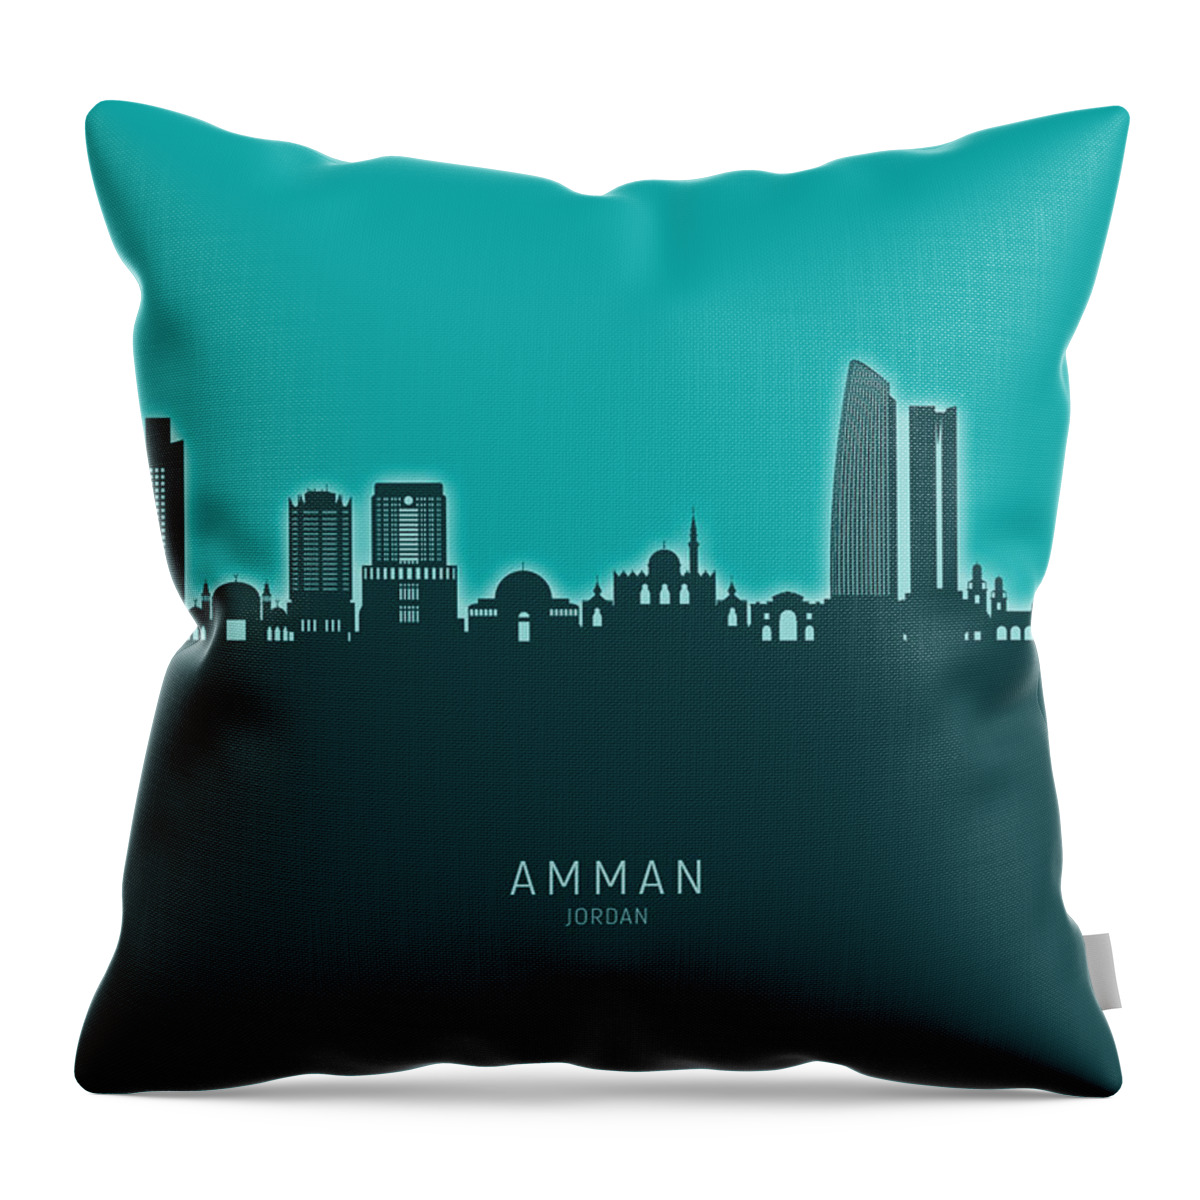 Amman Throw Pillow featuring the digital art Amman Skyline #97 by Michael Tompsett